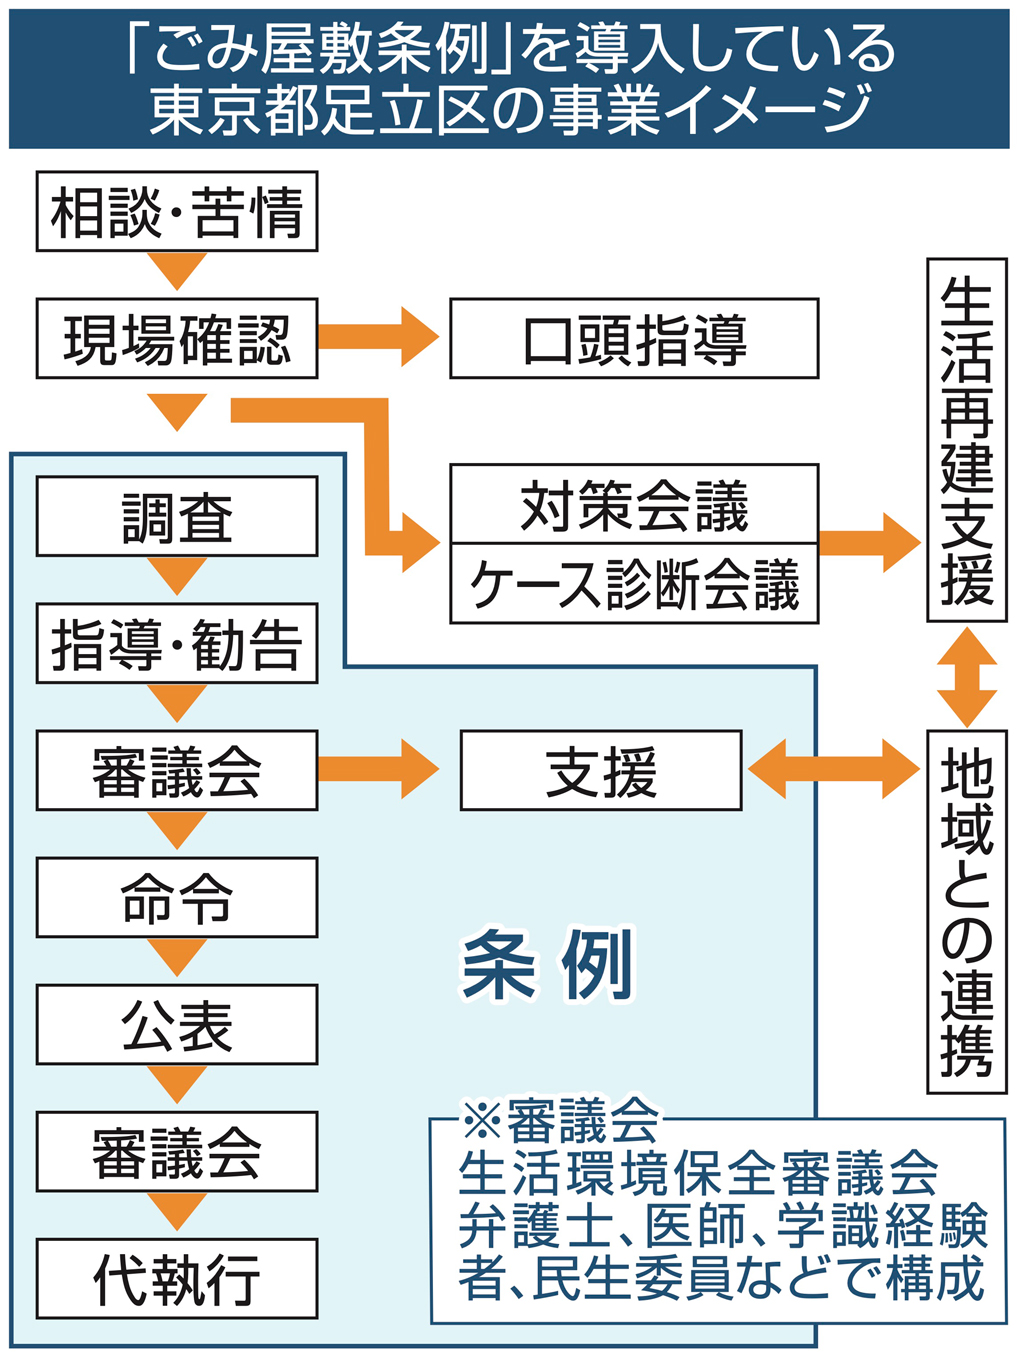 「ごみ屋敷条例」を導入している東京都足立区の事業イメージ